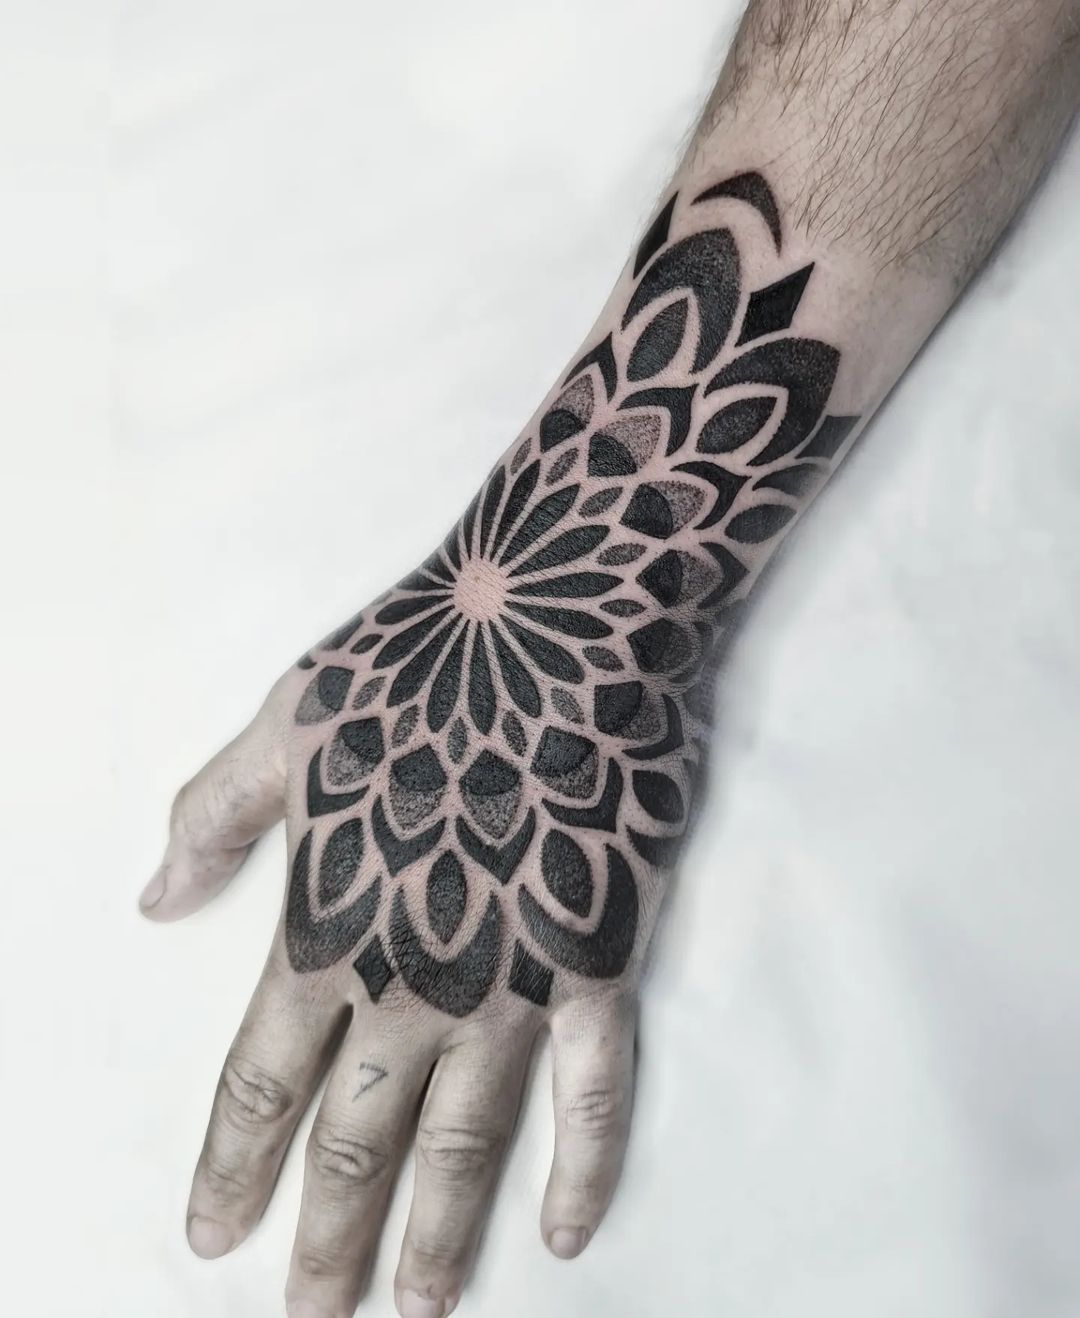 Mandala tattoo ideas by diddaztattoo